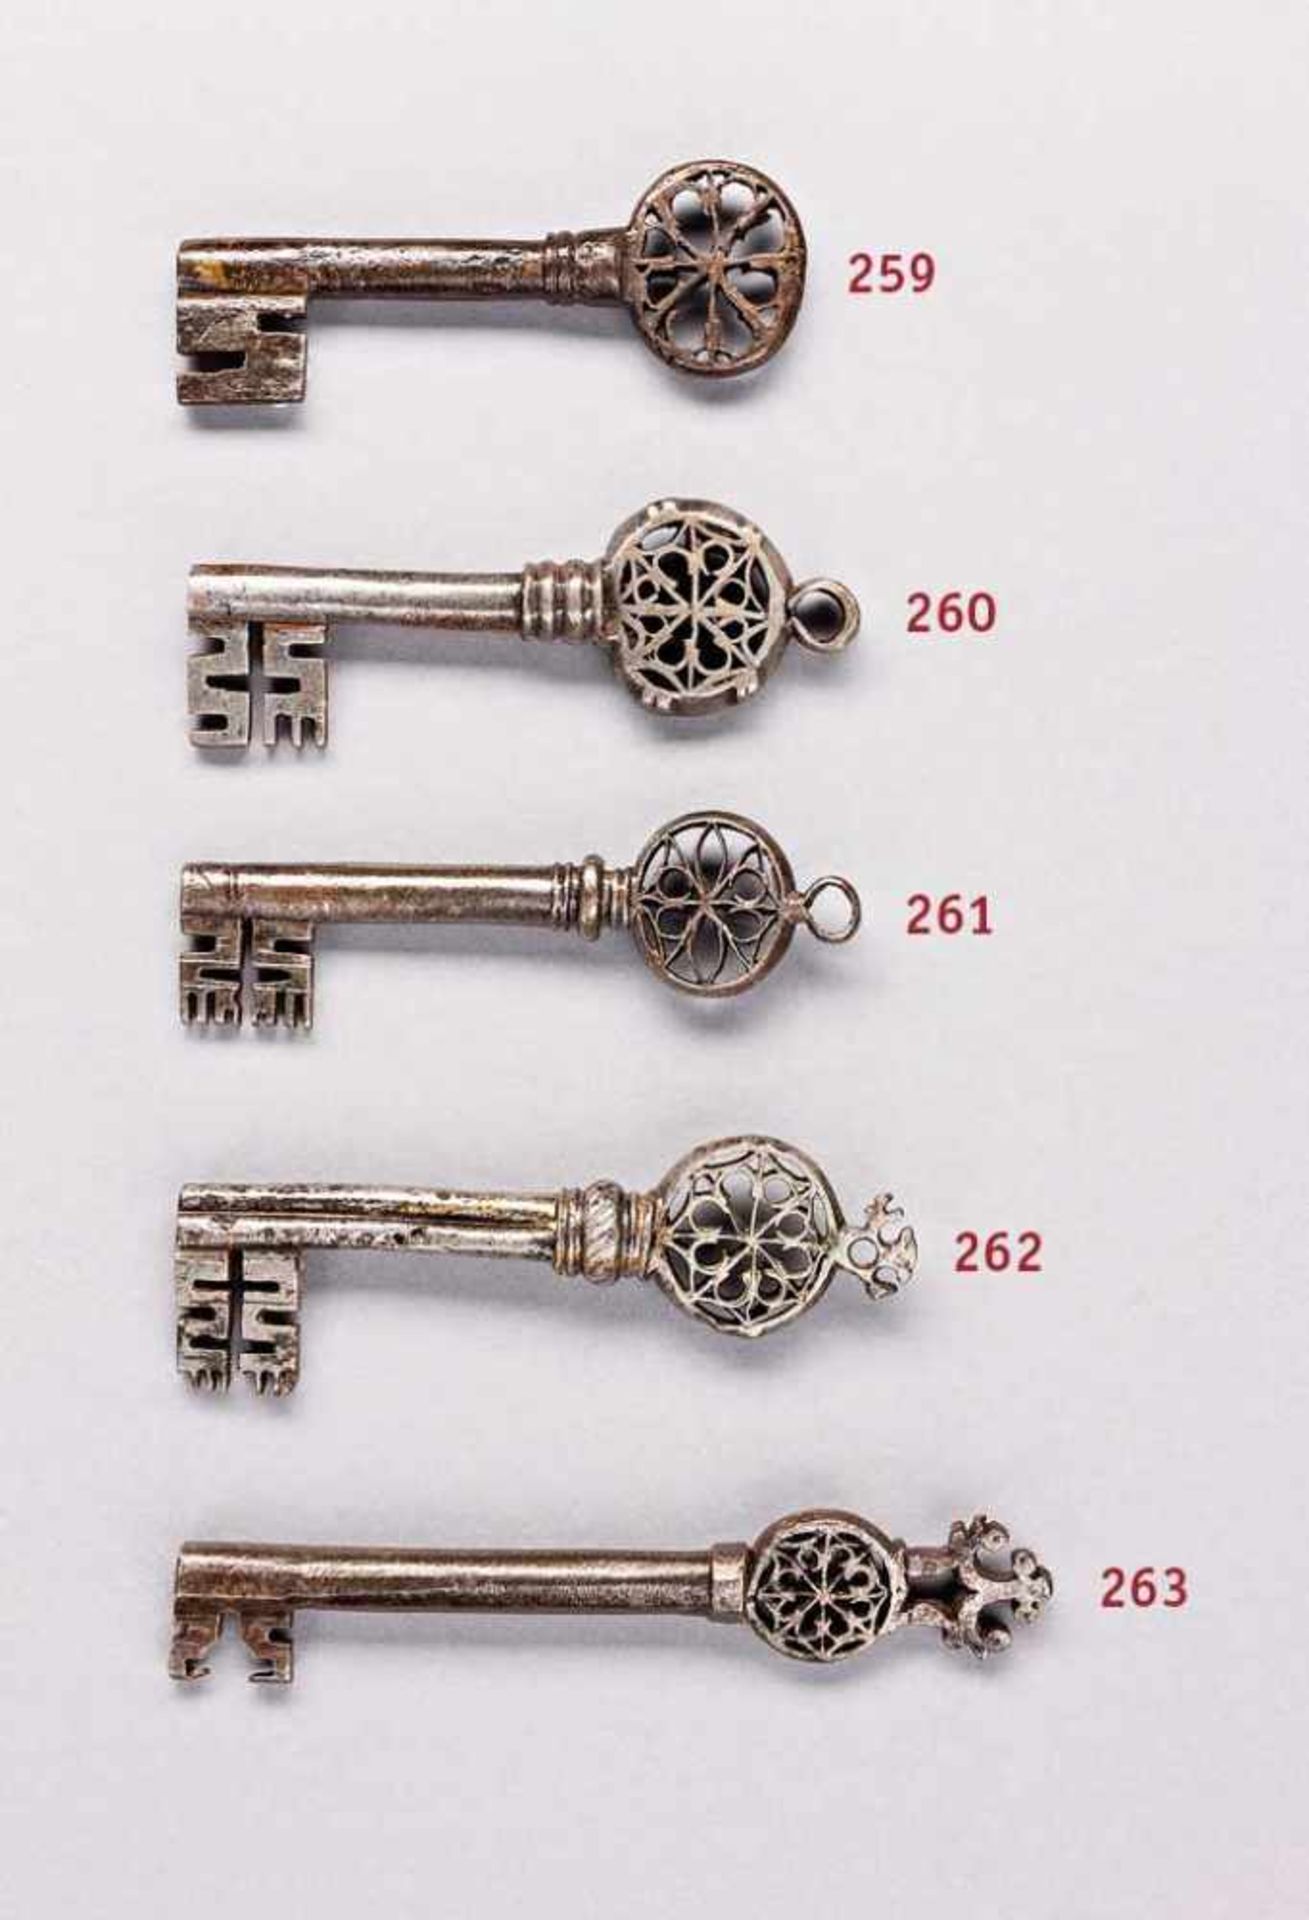 "Venezianischer" Schlüssel. Reide mit oktagonalem Stern und Öse. Hohldorn. 16./17. Jh. L 10,5 cm.